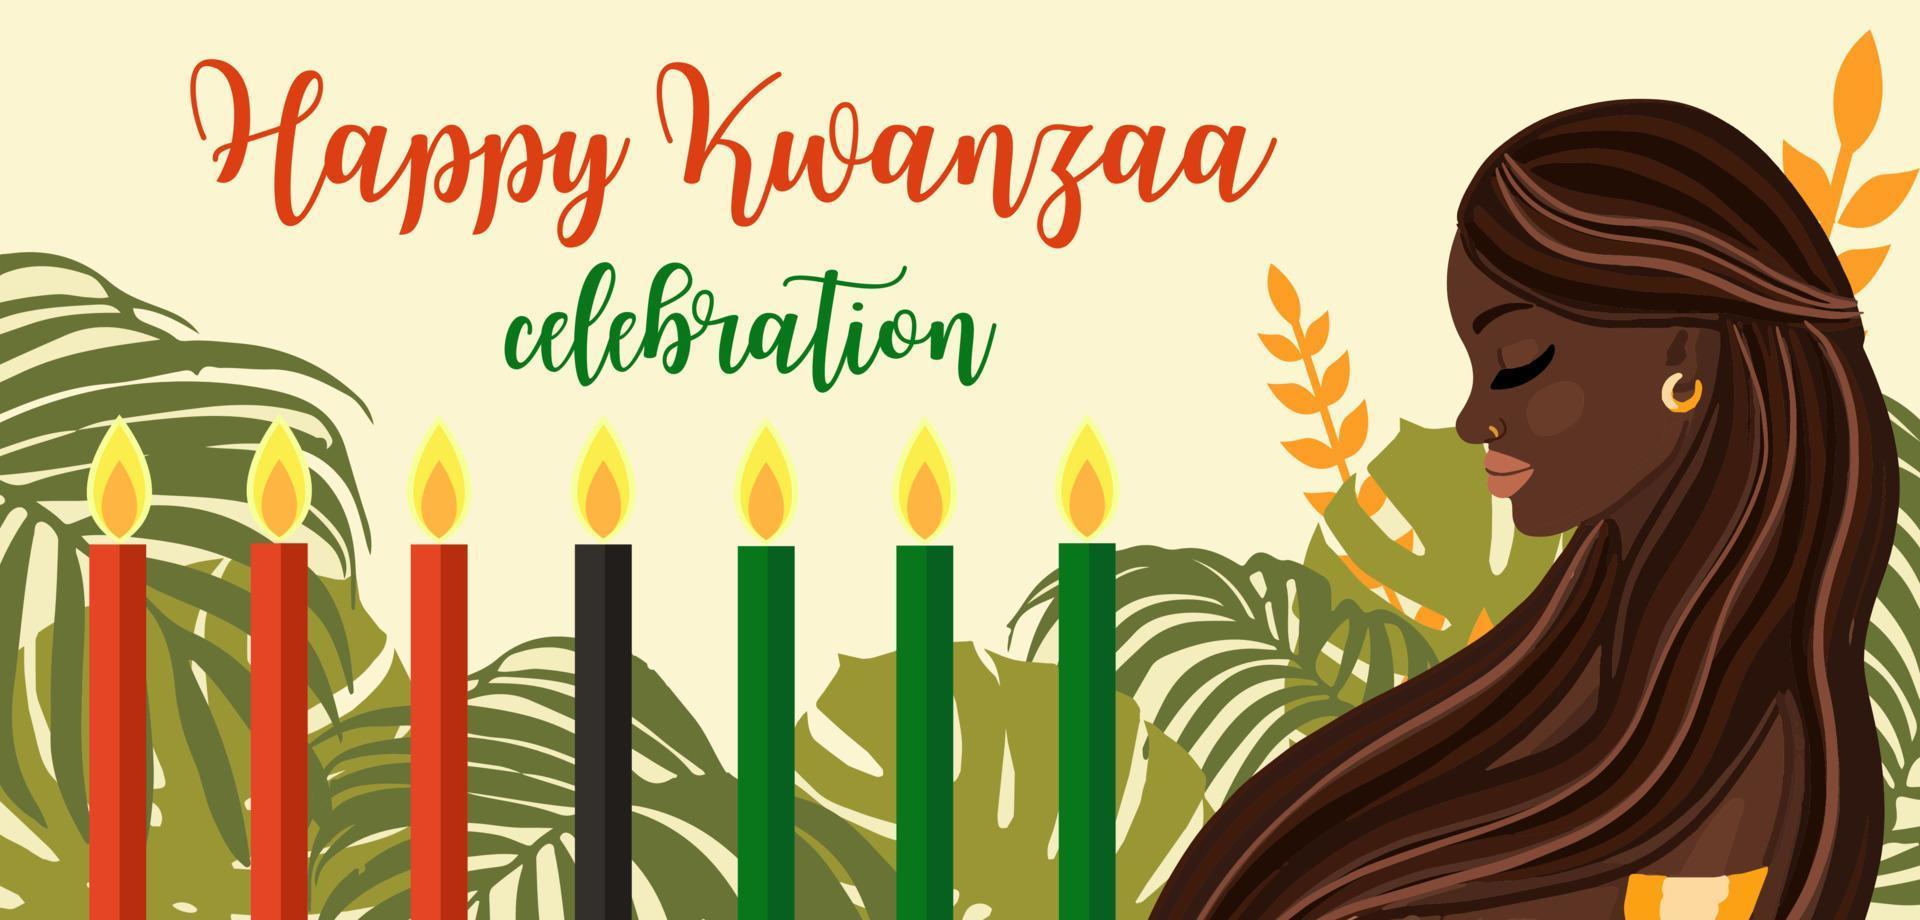 kwanzaa cultura afroamericana tradición celebración diseño con velas y hermosa mujer negra. feliz kwanzaa vacaciones vector tarjeta de felicitación